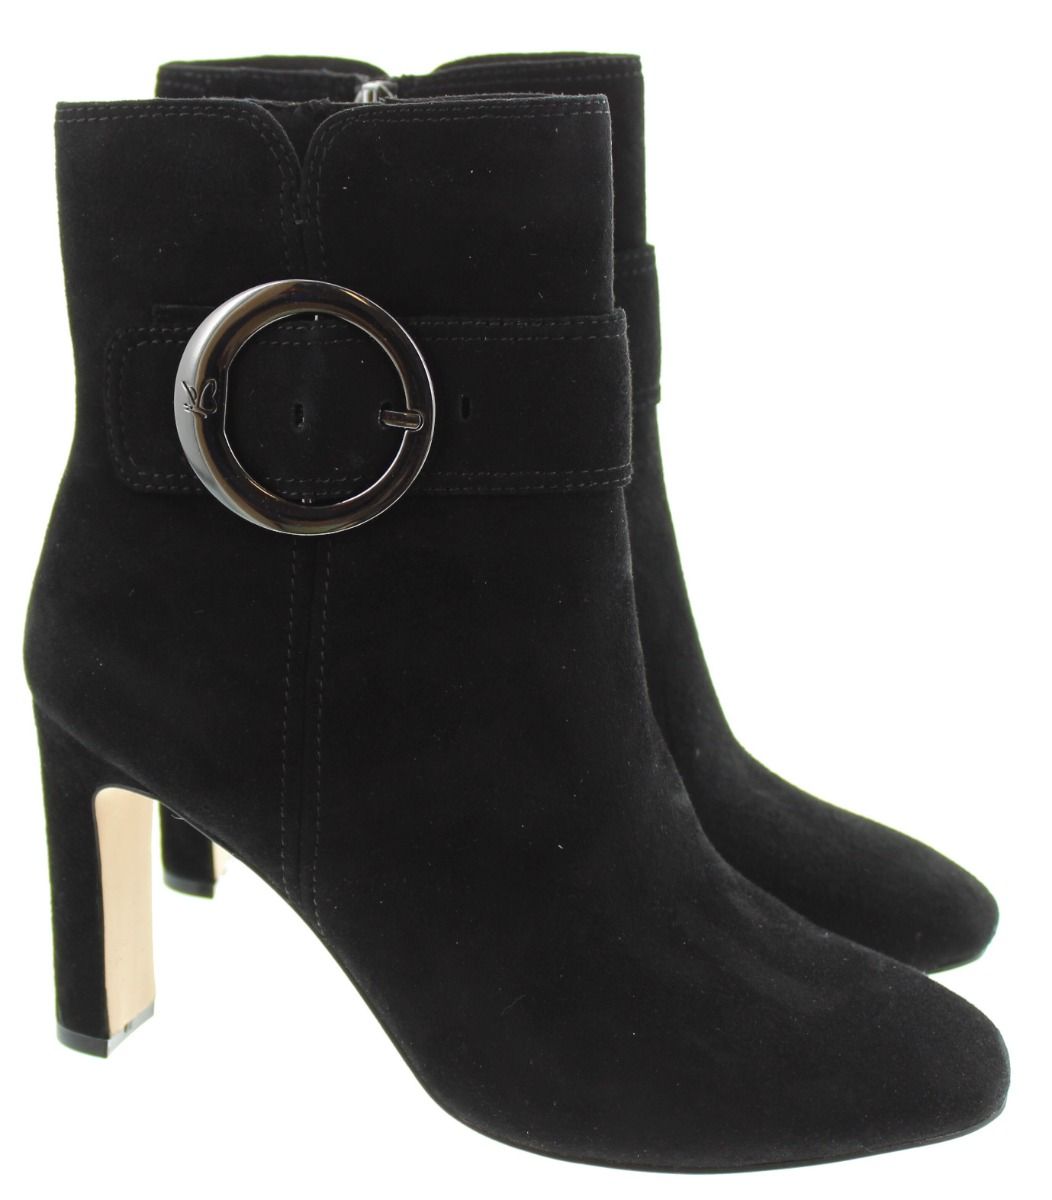 Black Suede Platform Golden Rivet Stiletto High Heel Ankle Boots – Onlymaker